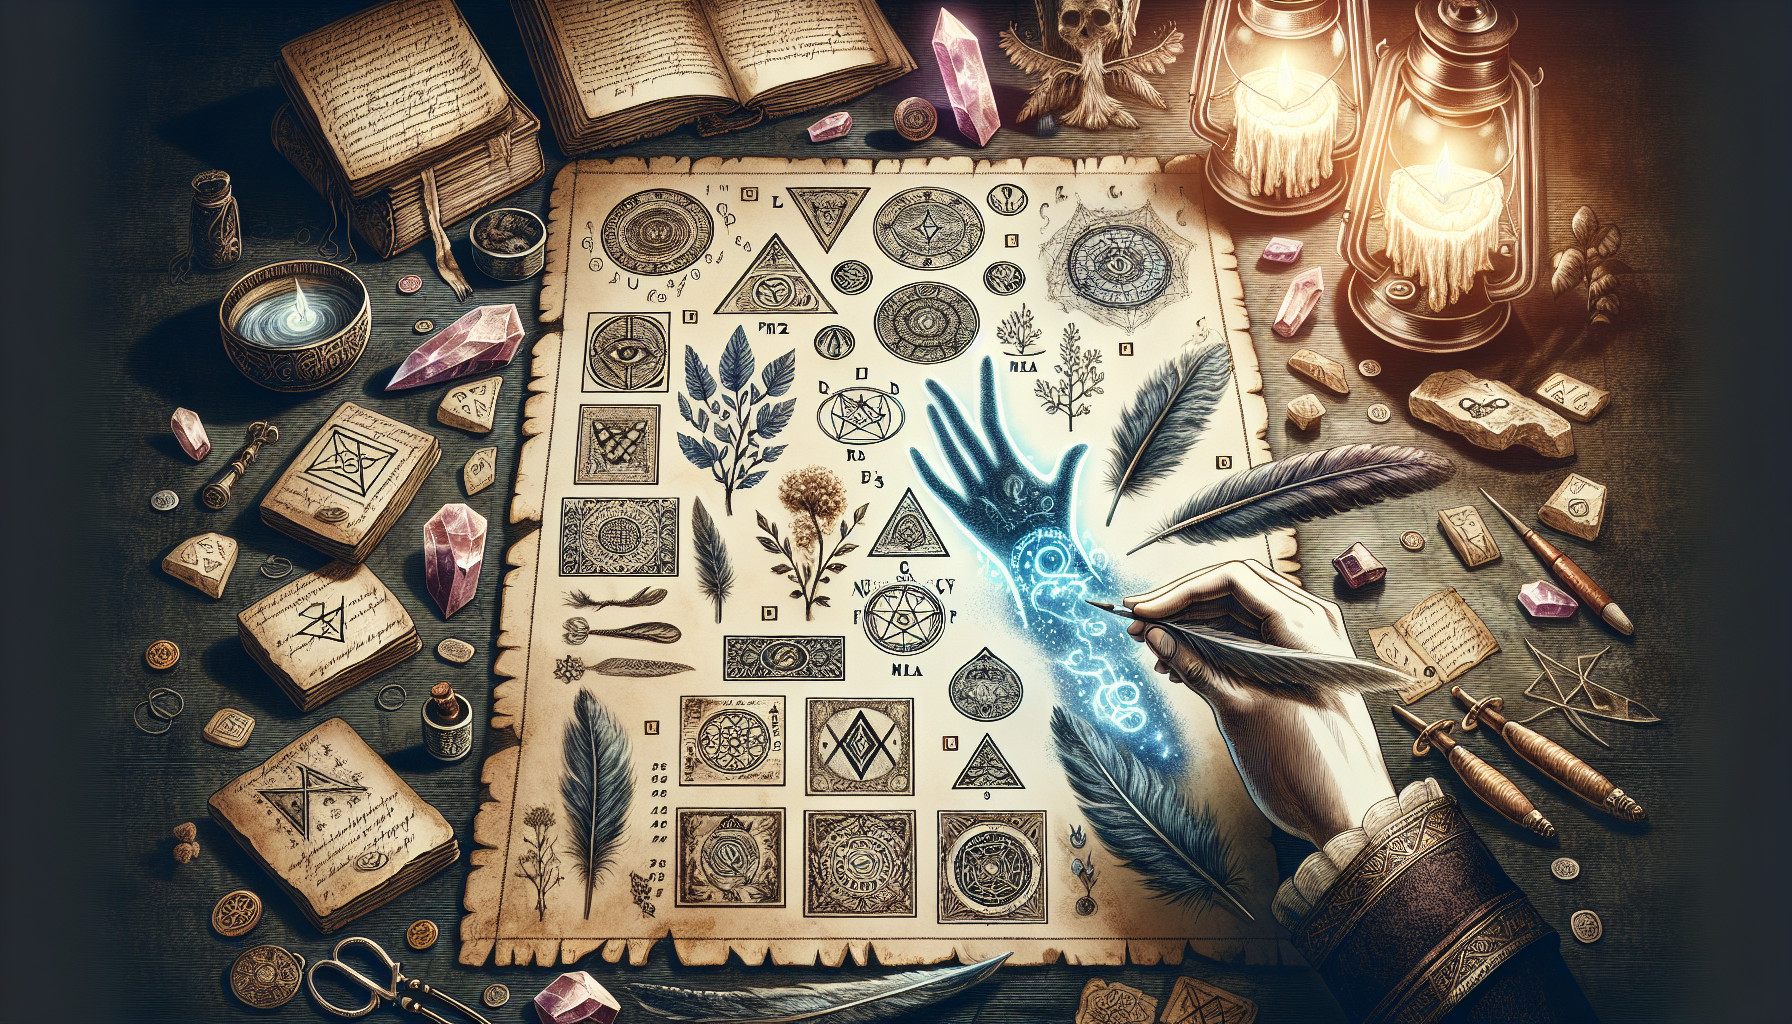 Cómo Crear Y Utilizar Talismanes Y Amuletos Mágicos En Rituales